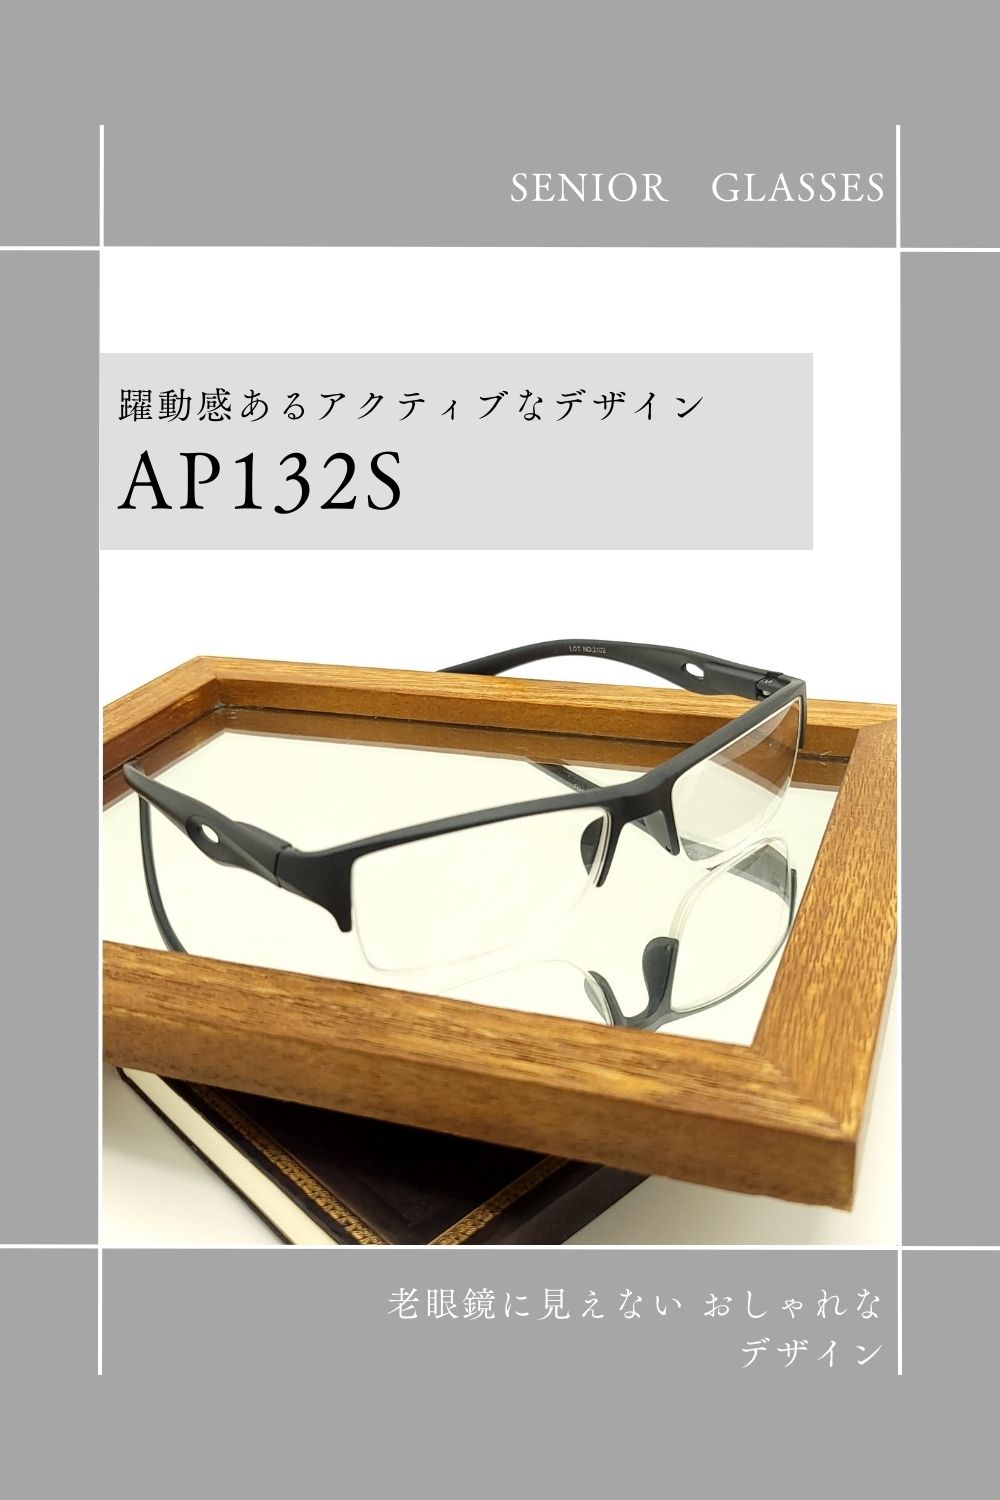 AP132S | AILEオリジナルブランド シニアグラスラインナップ | 有限会社エール